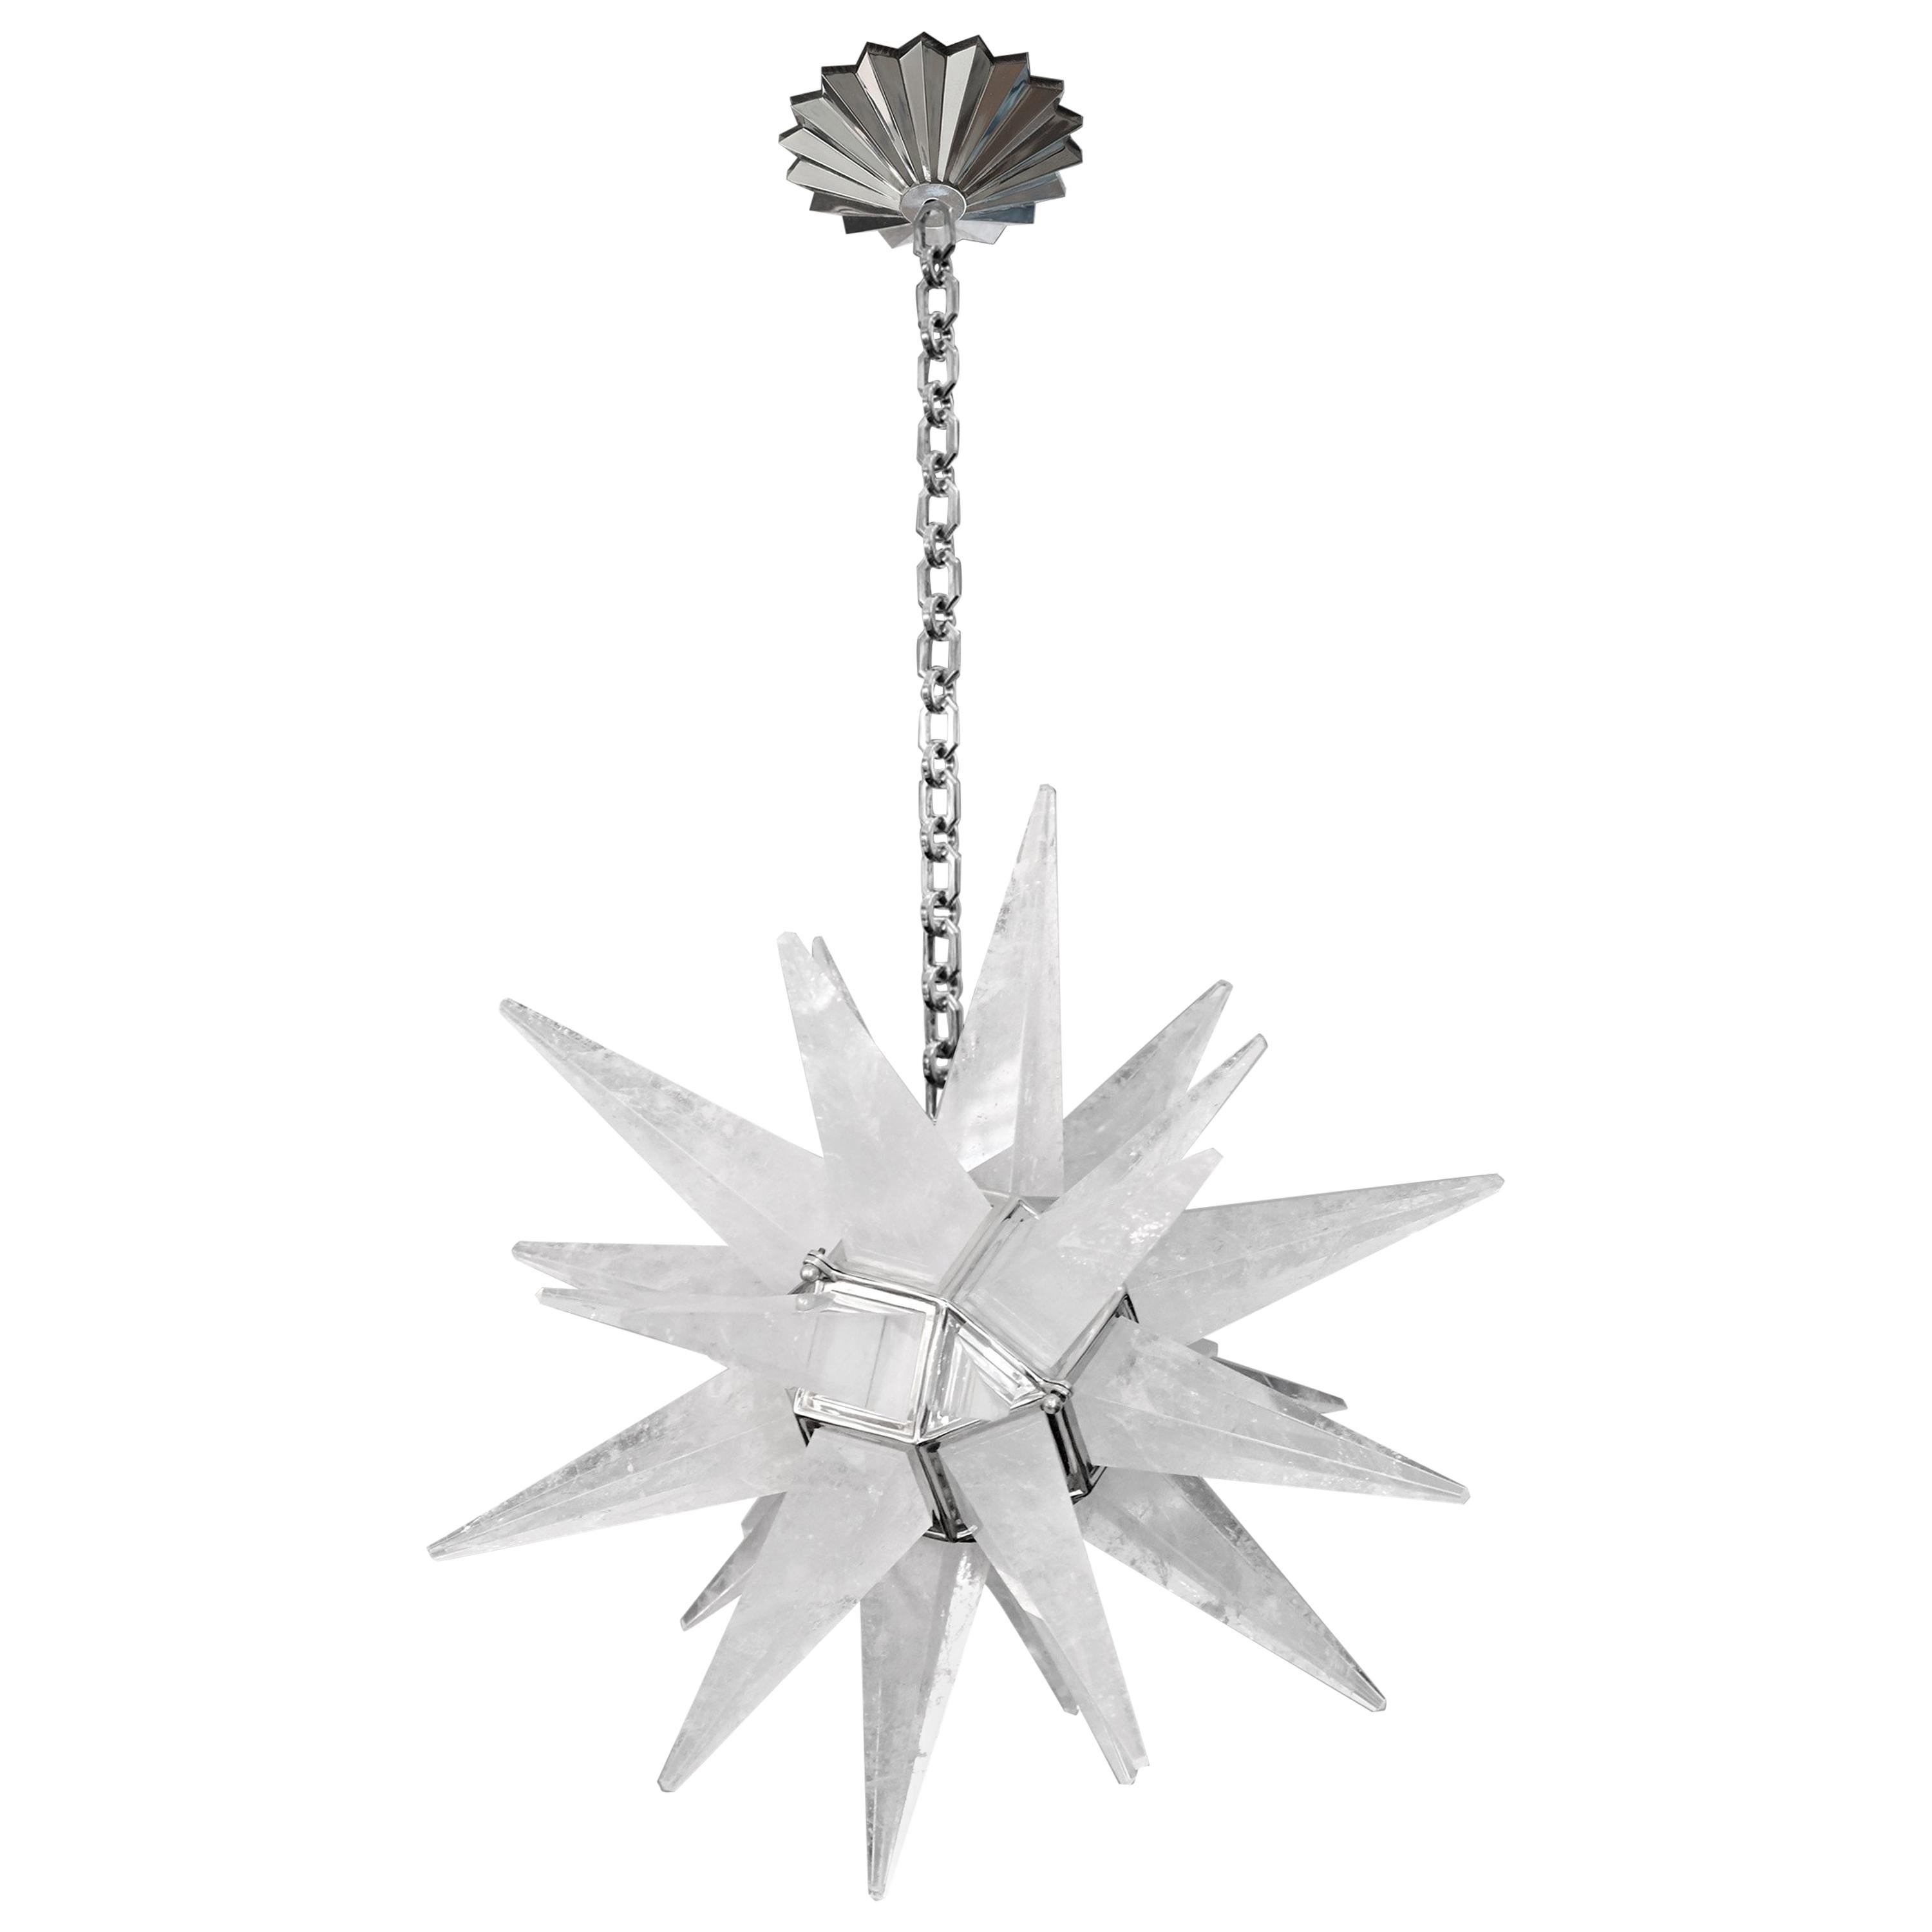 Sternförmiger Bergkristall-Kronleuchter im Deco-Stil mit poliertem Nickelrahmen. Erstellt von Phoenix Gallery NYC.
Der Kronleuchter ist 25